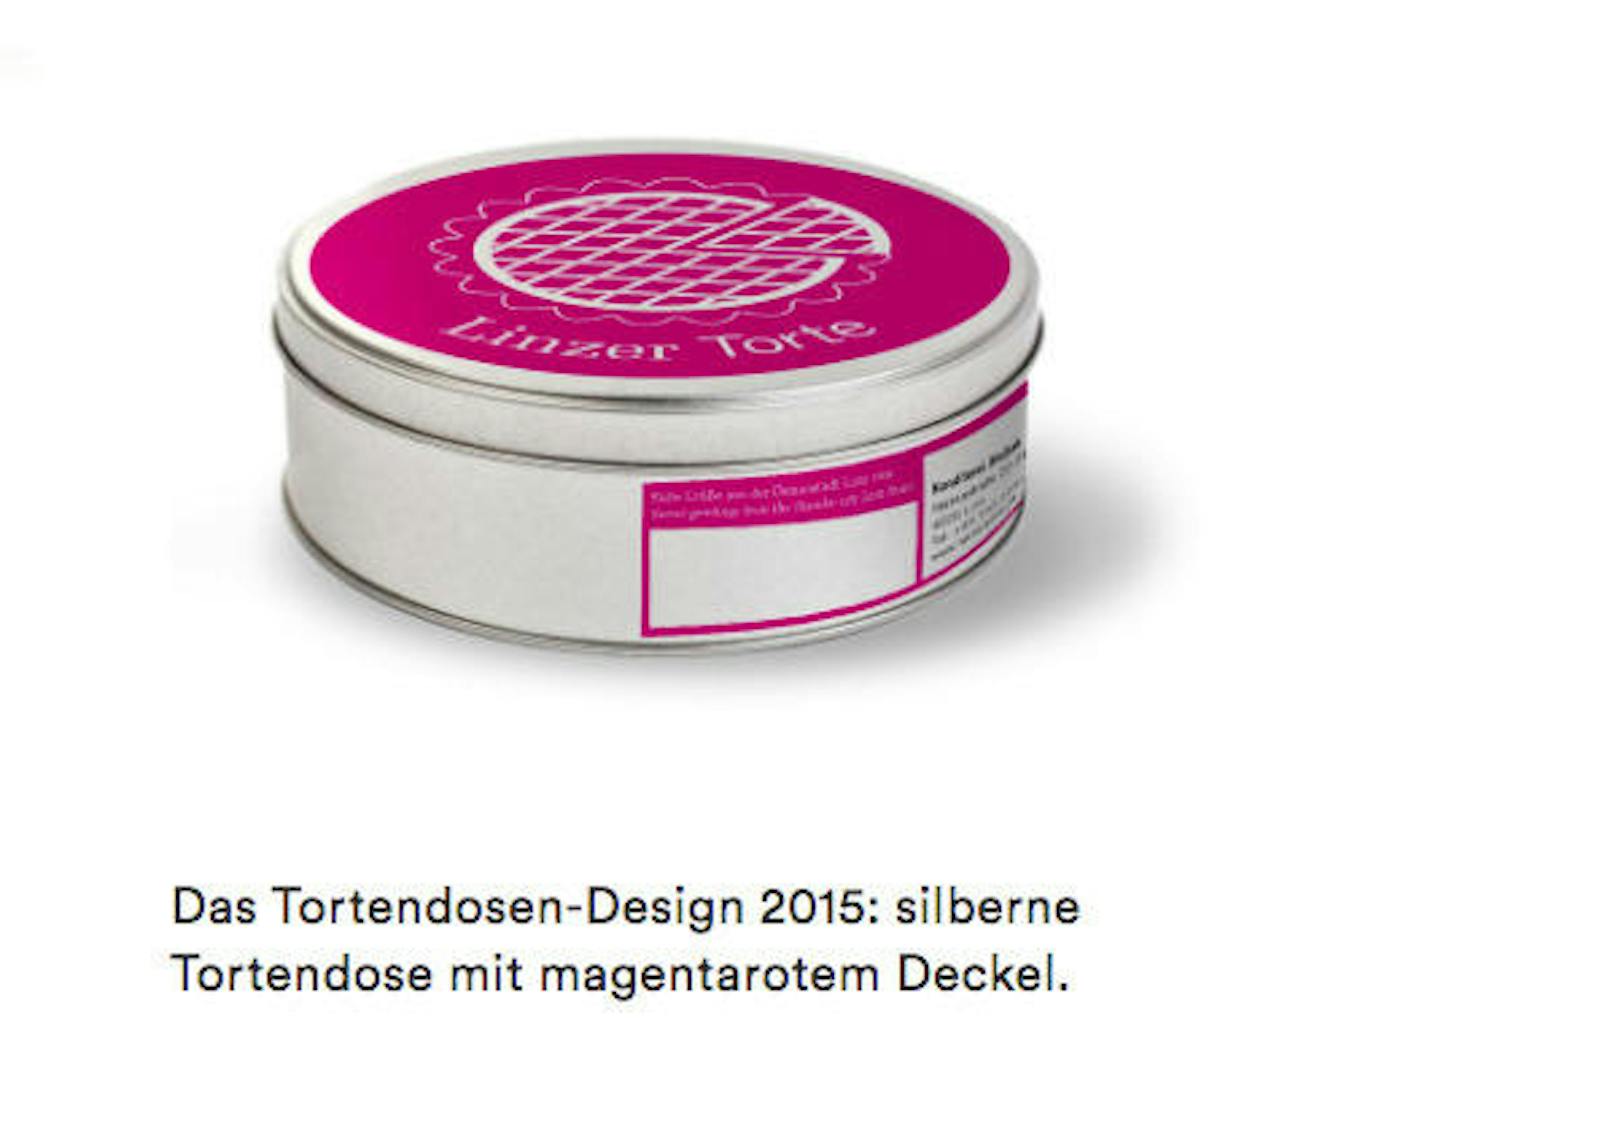 Die Dosen-Designs der letzten sechs Jahre. Begonnen hat alles mit der Linzer Torte im Jahr 2015.